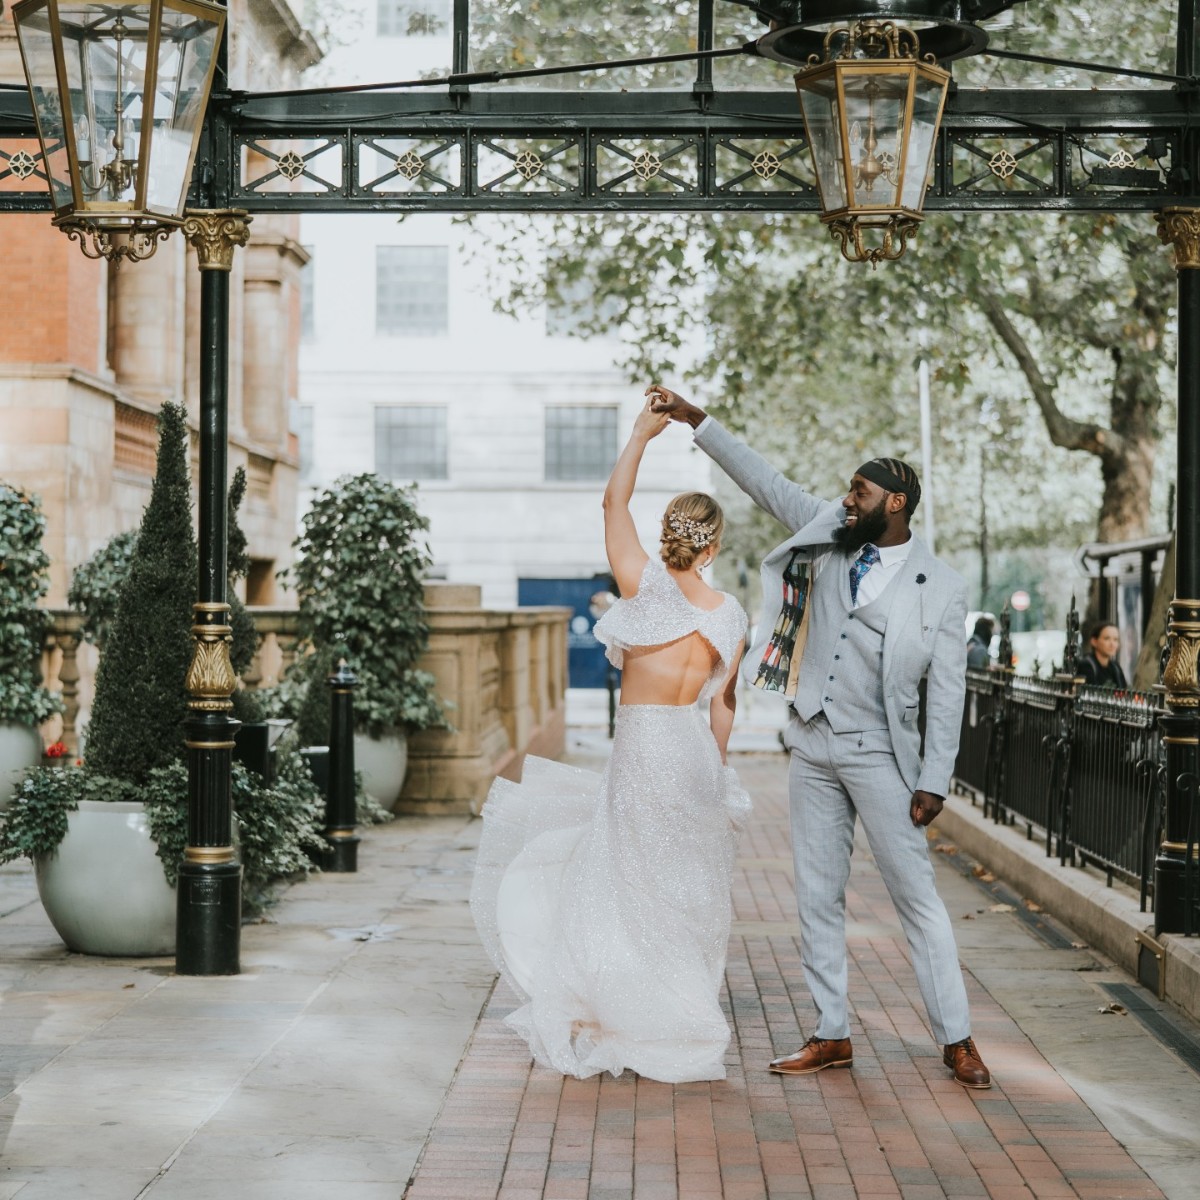 Dance like nobody is watching ✨ 📸 @poppycarterportraits #TheLandmarkLondon #LeadingHotelsOfTheWorld #LHWTraveler #Wedding #LondonWeddings